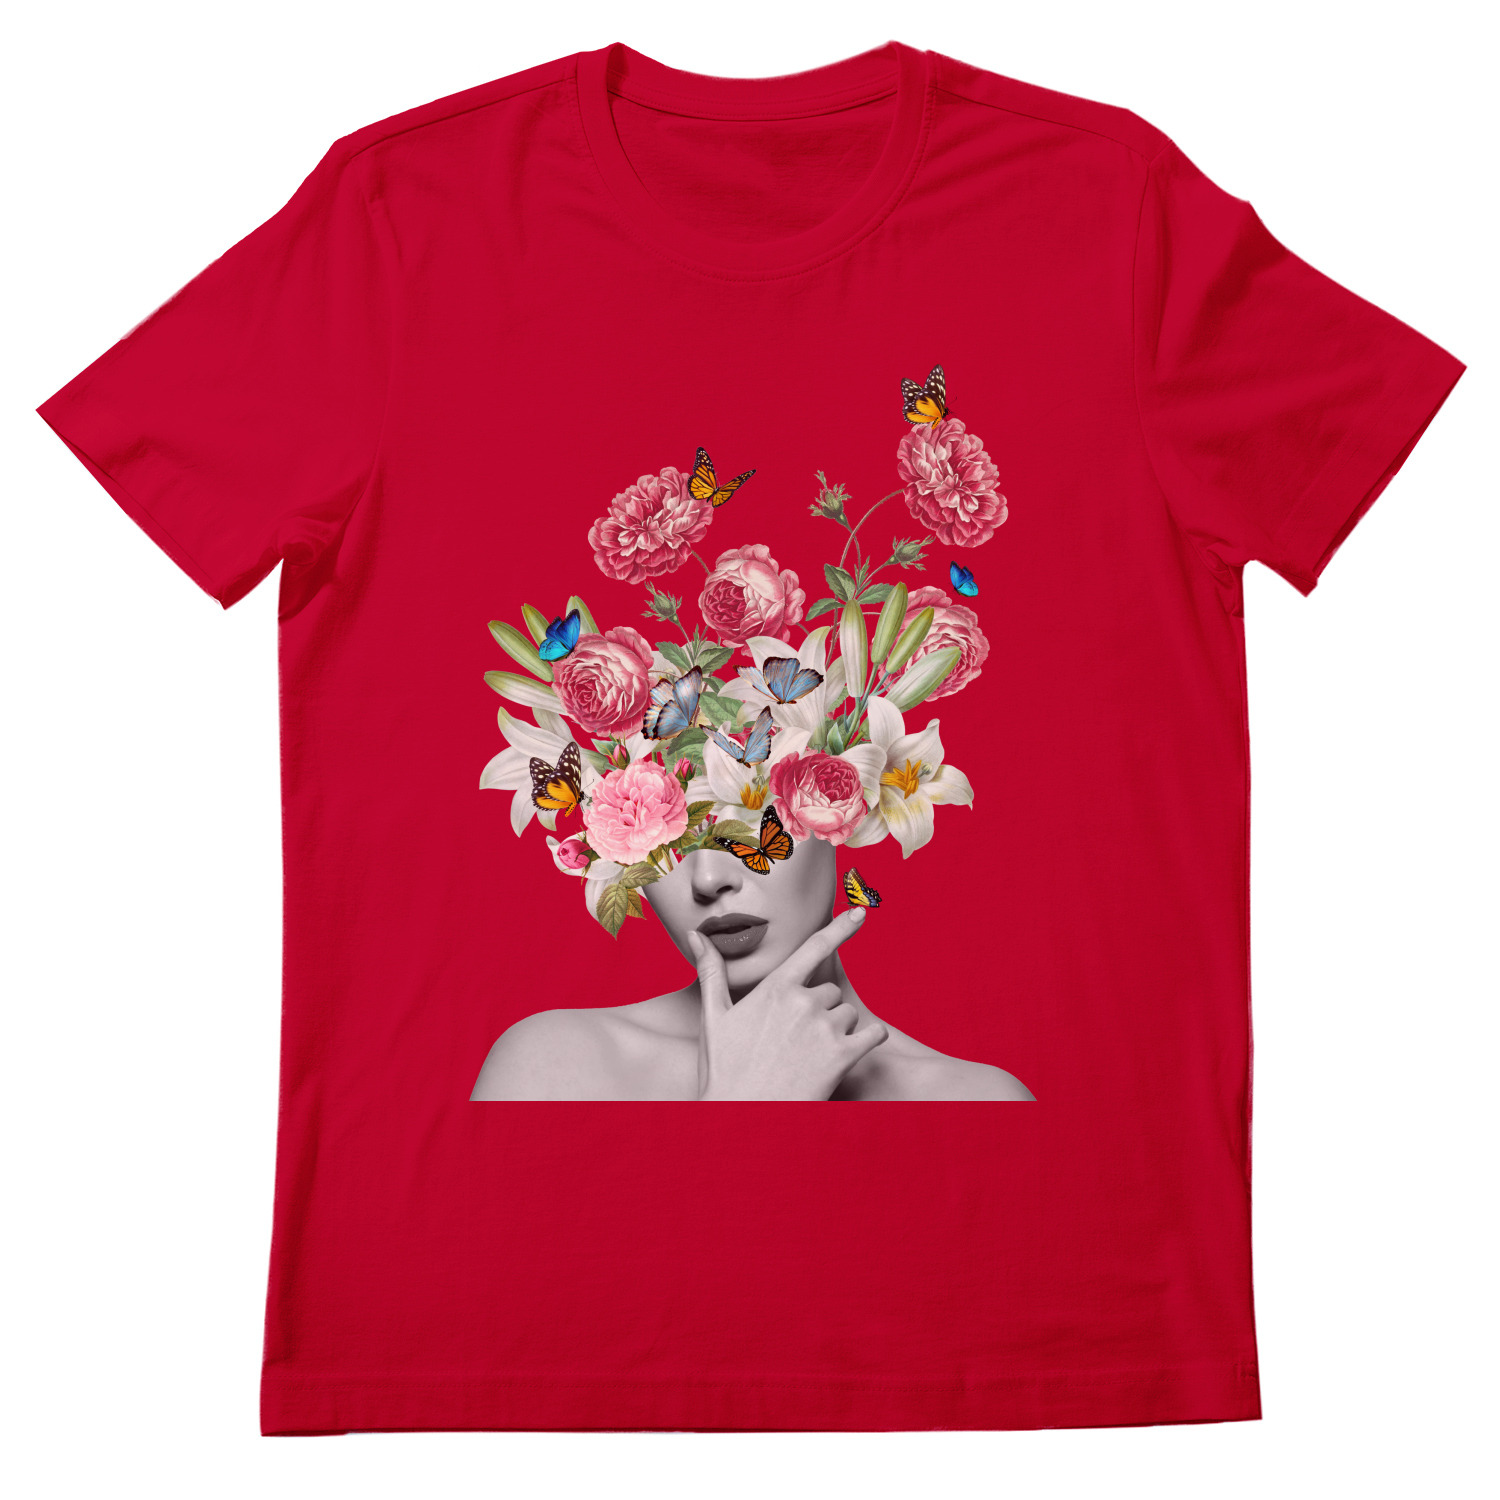 Купить футболку с цветком. Женская футболка цветы. Футболка с большим цветком. Портрет с цветами. Цветочный магазин футболки.